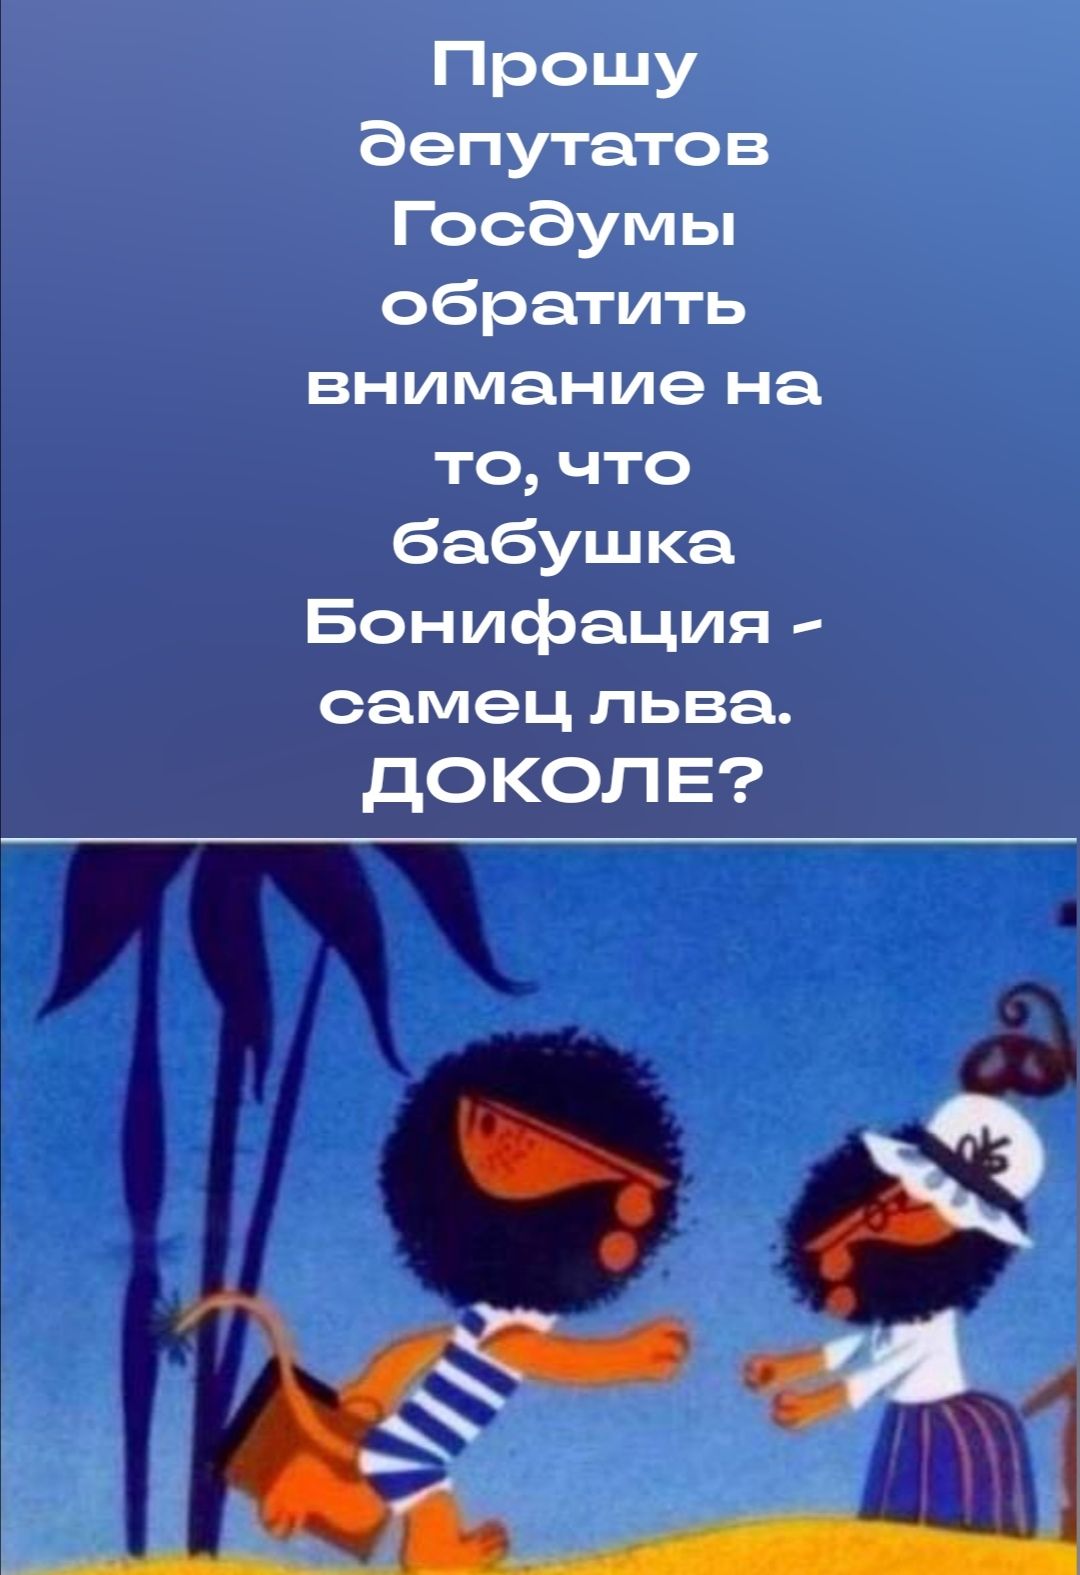 Прошу депутатов Госдумы обратить внимание на то что баБушкя Бонифация птиц пира